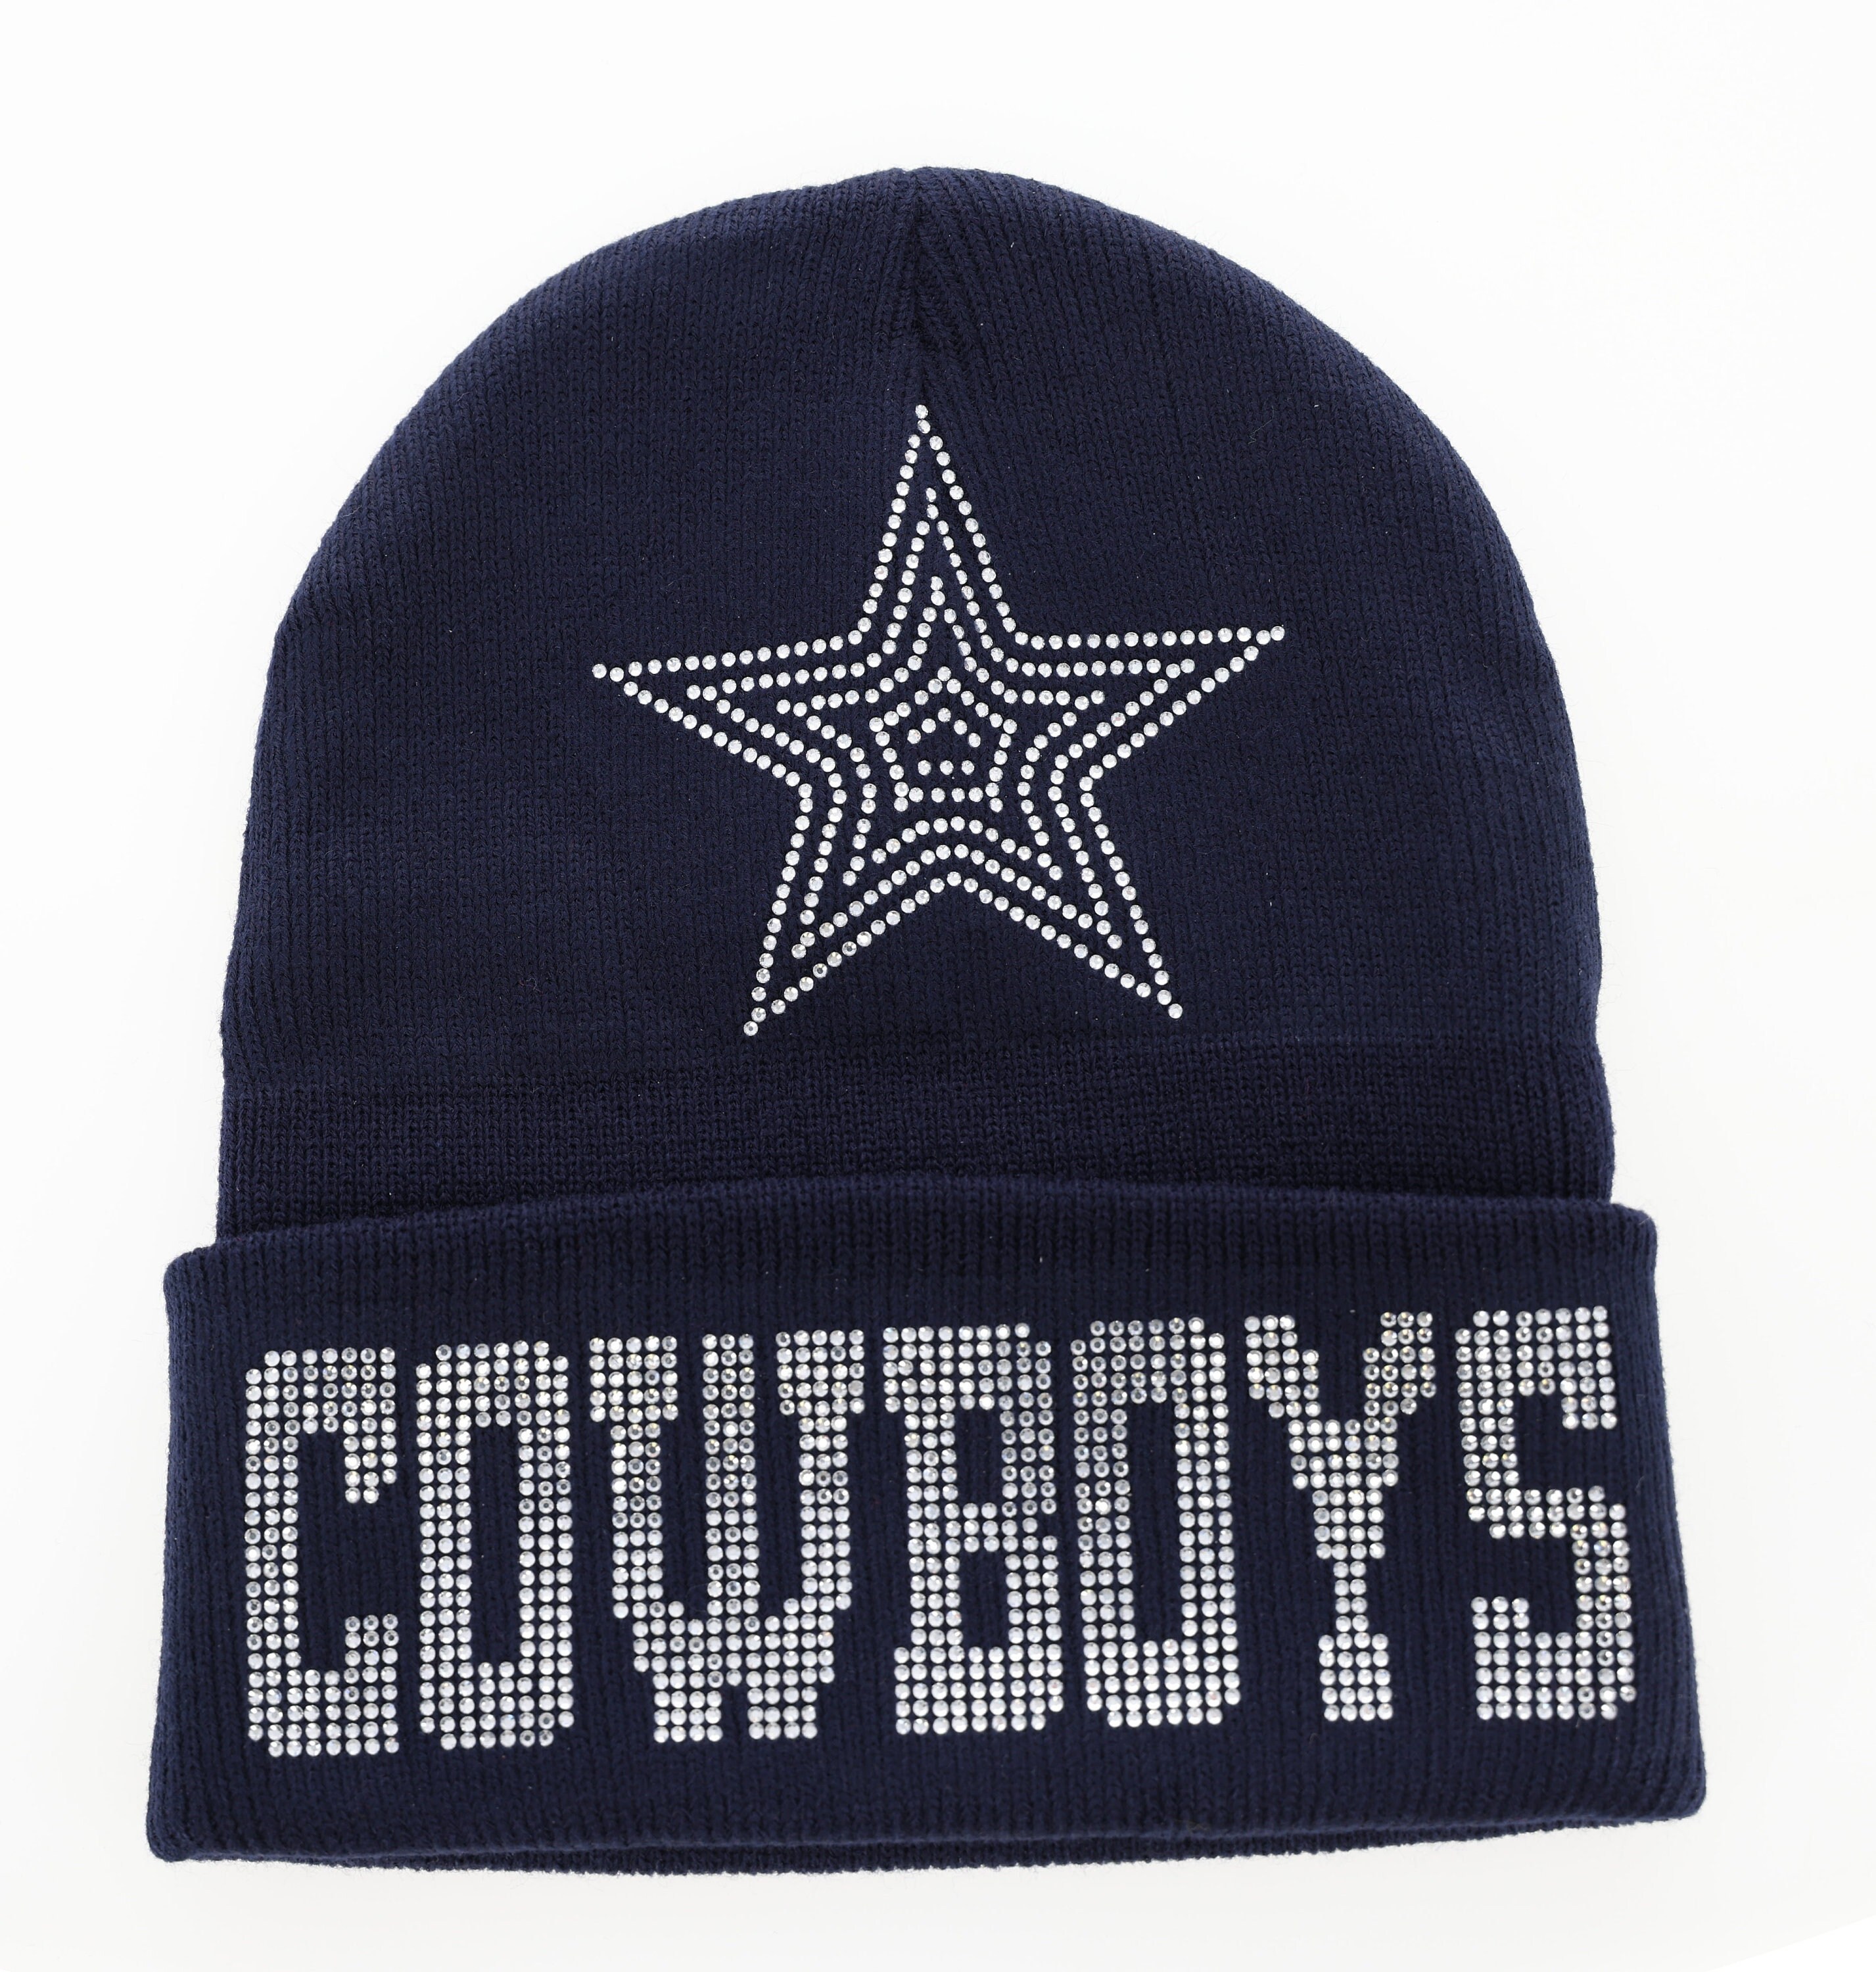 Dallas Cowboys Beanies, Cowboys Knit Hat, Beanie